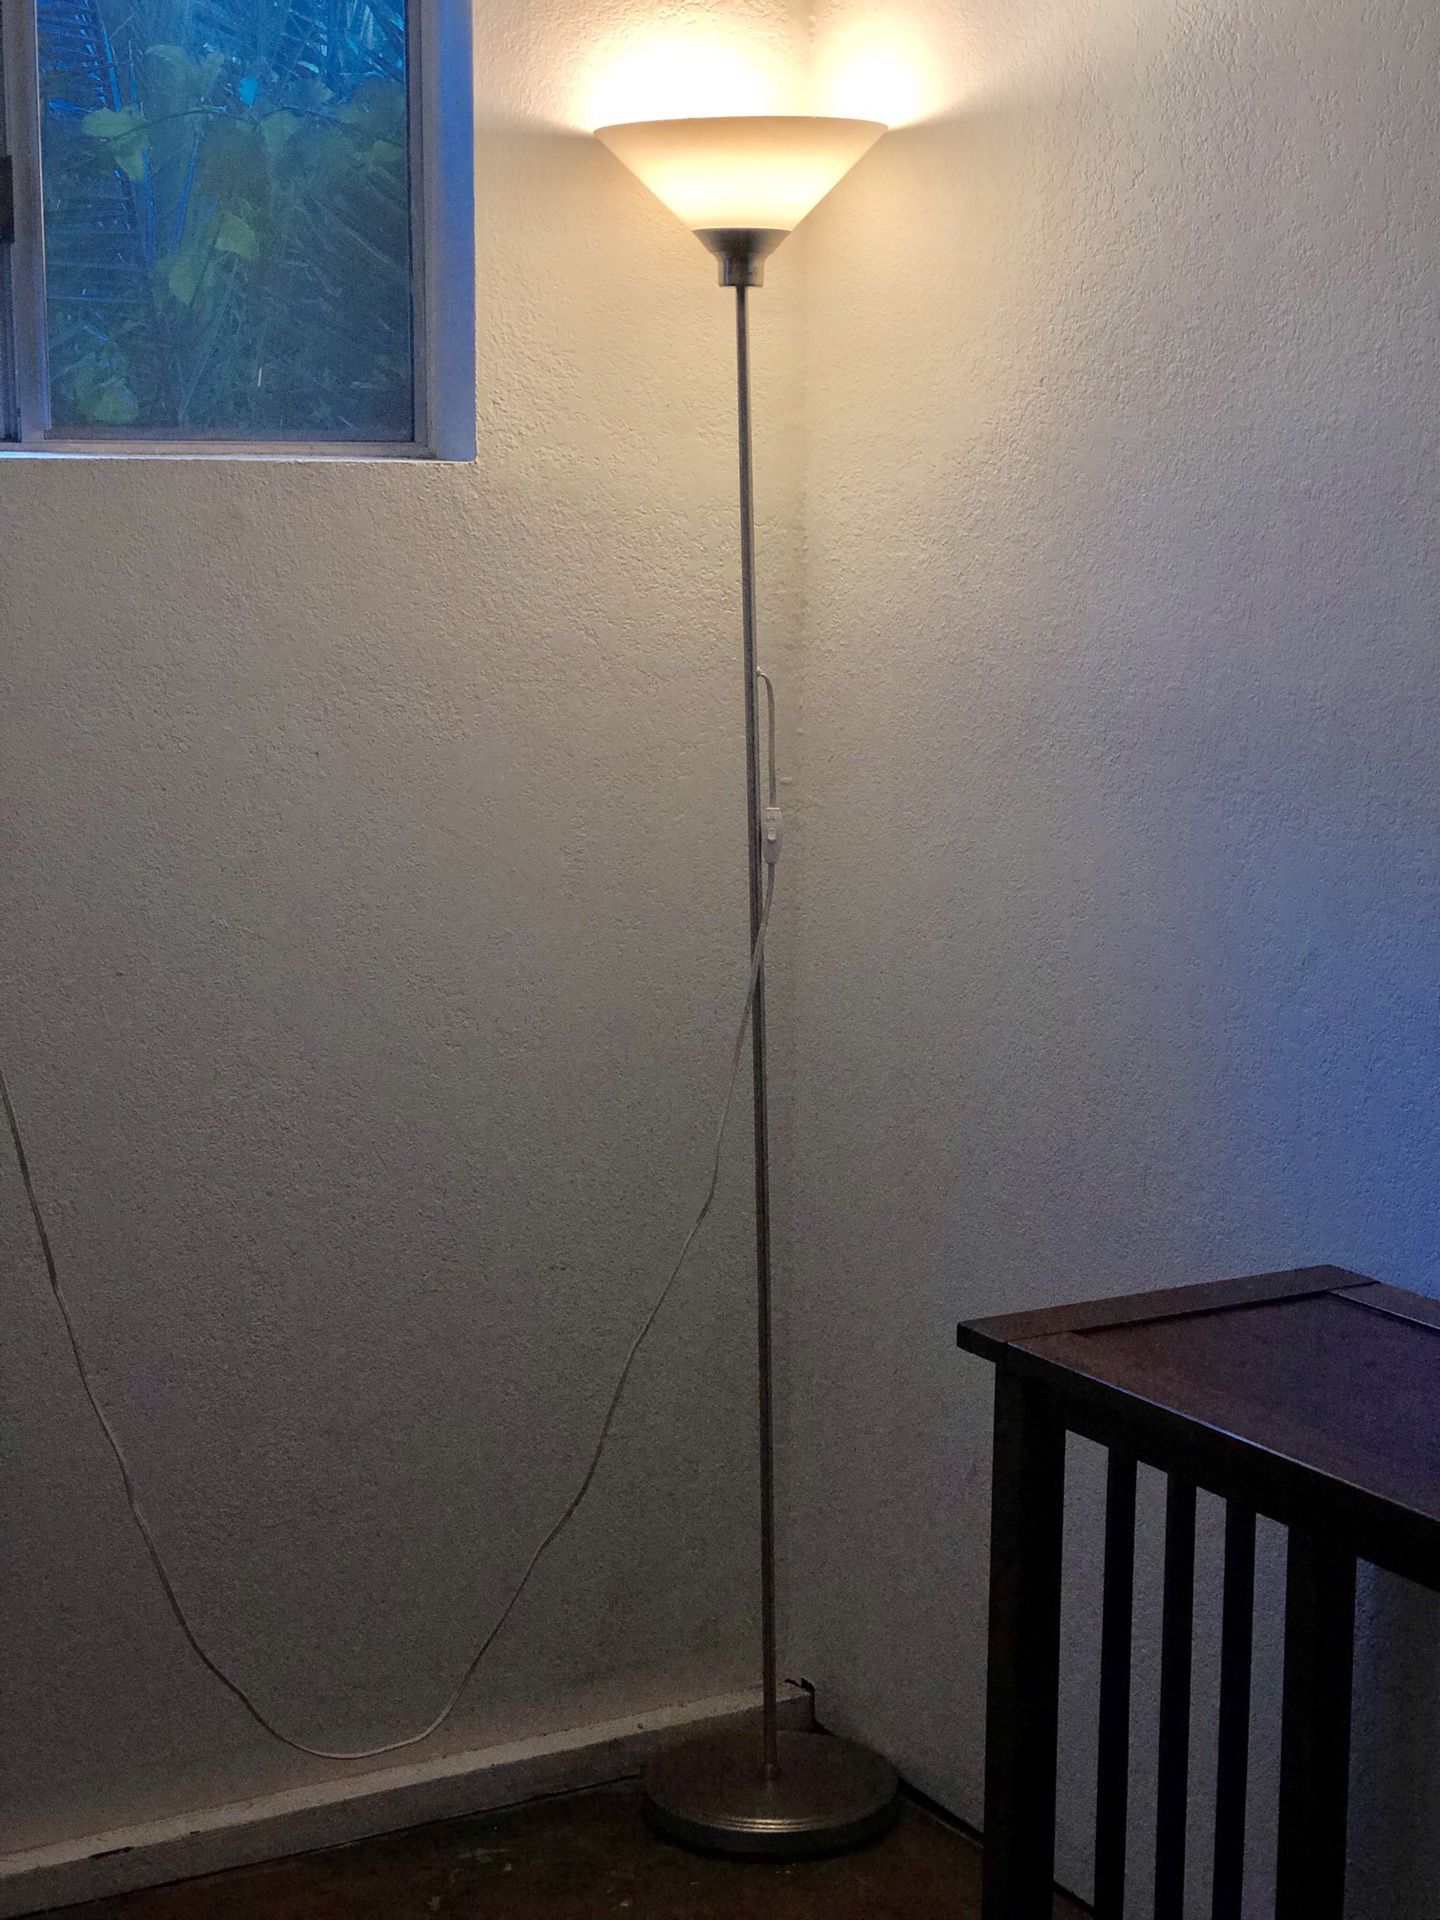 IKEA Floor Lamp